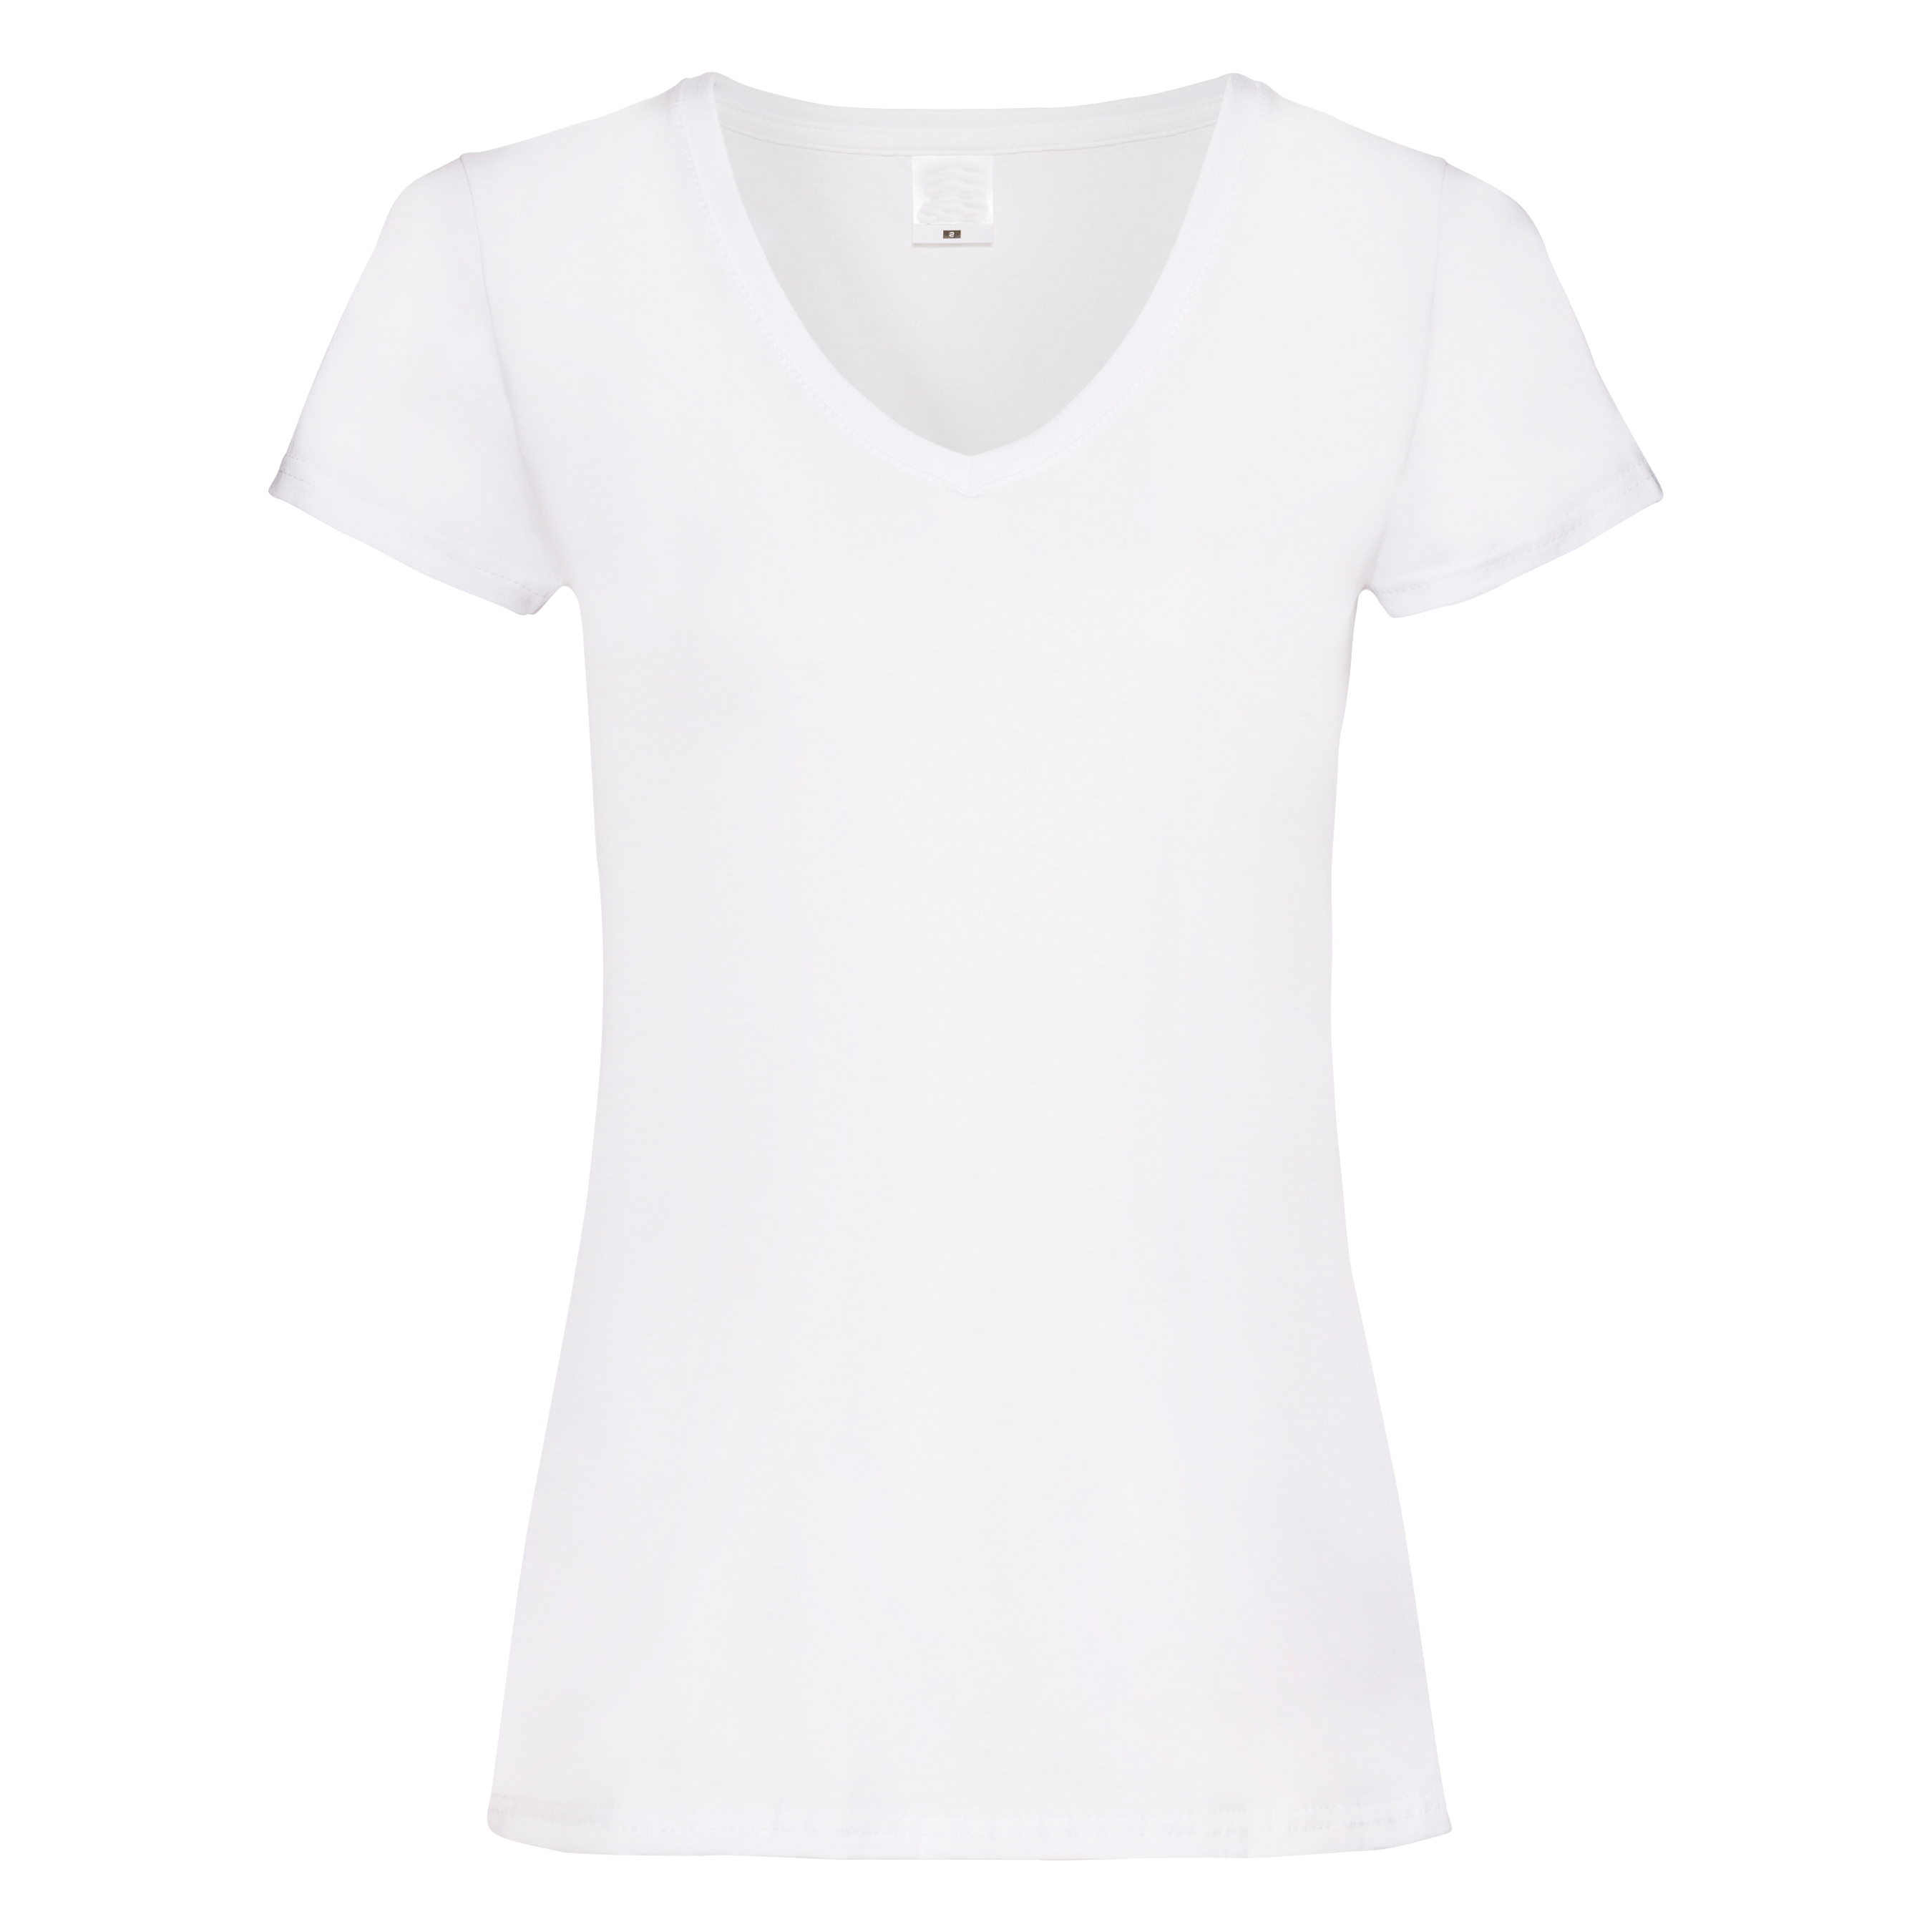 Camiseta Entallada De Manga Corta Y Cuello En V Universal Textiles - blanco - 